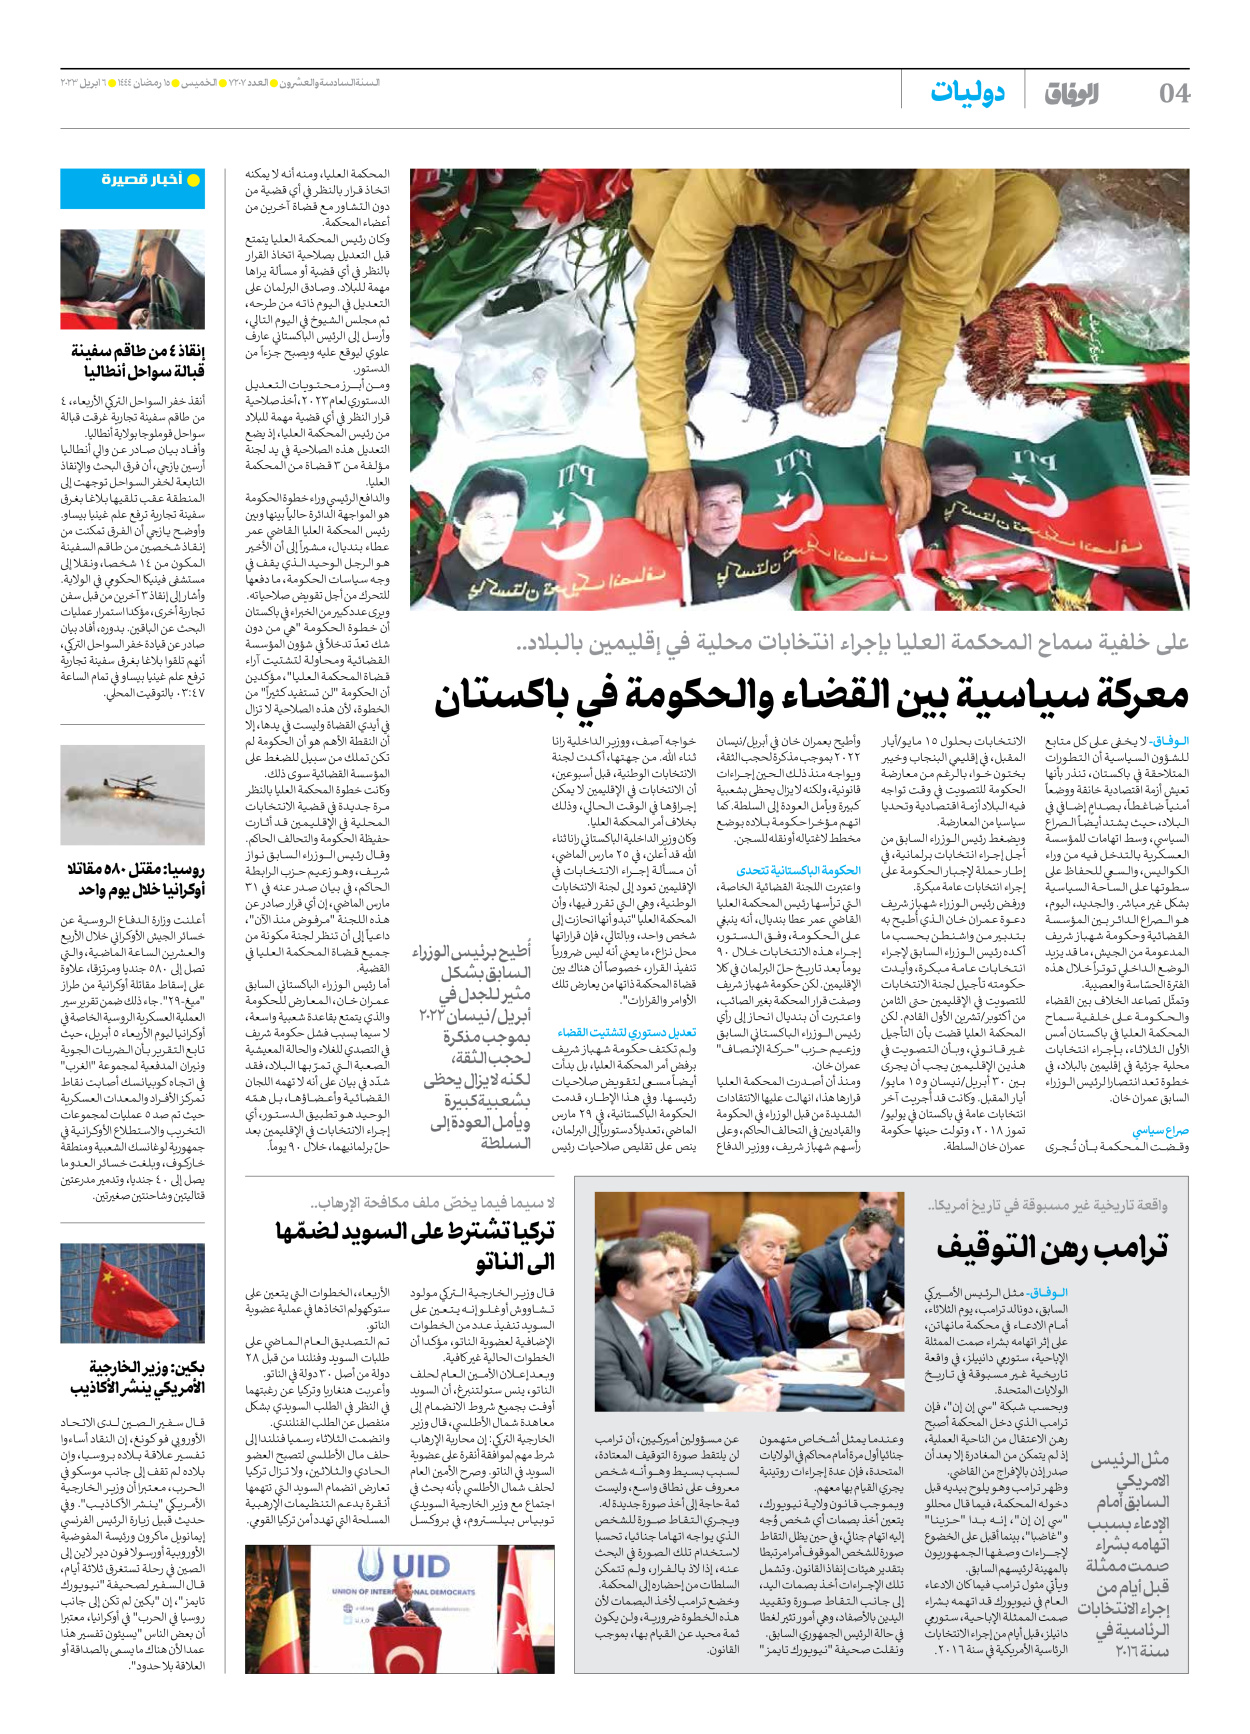 صحیفة ایران الدولیة الوفاق - العدد سبعة آلاف ومائتان وسبعة - ٠٦ أبريل ٢٠٢٣ - الصفحة ٤